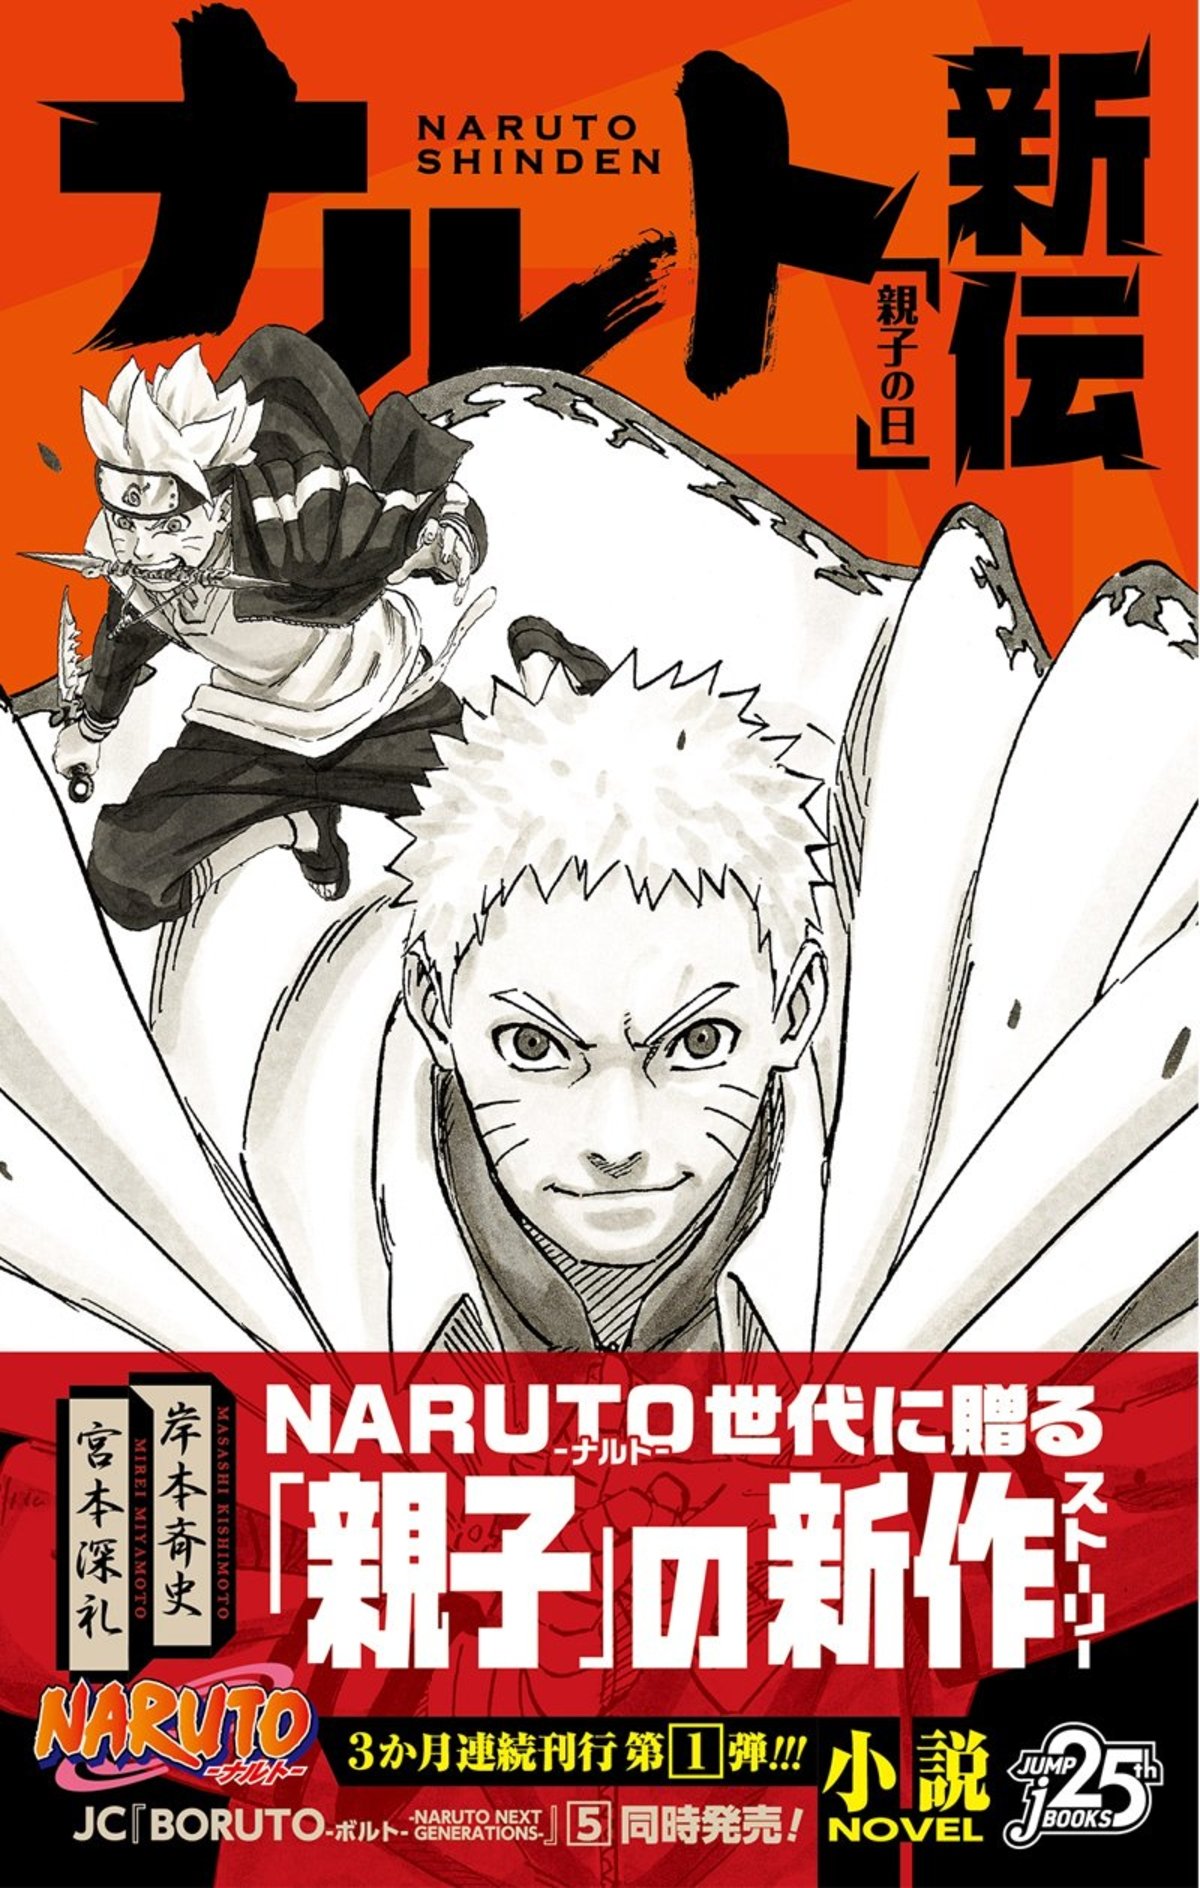 Naruto: Masashi Kishimoto revela por primera vez el nuevo diseño del protagonista